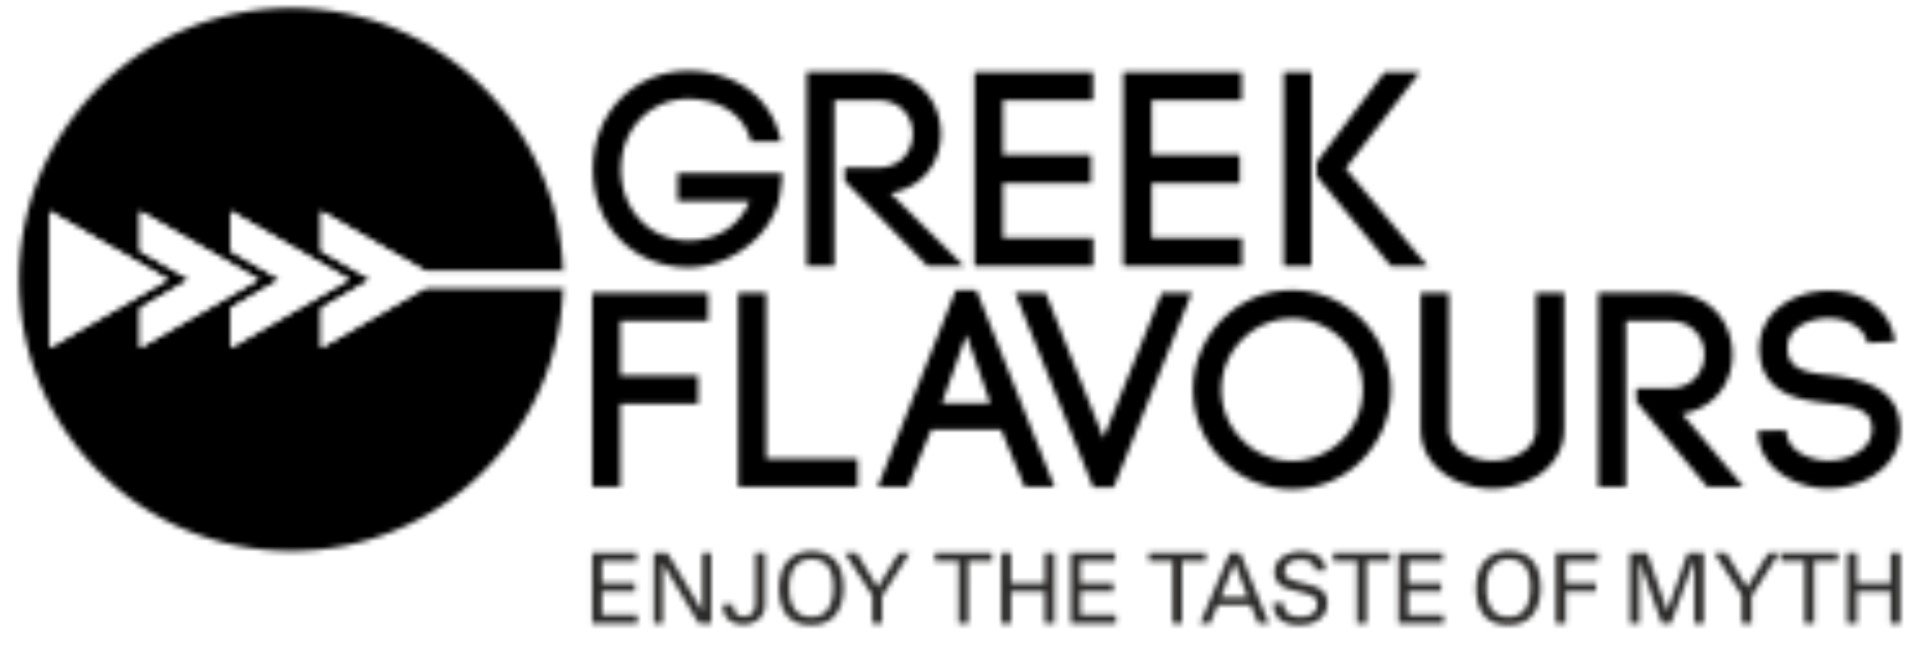 Greek Flavours DE logo